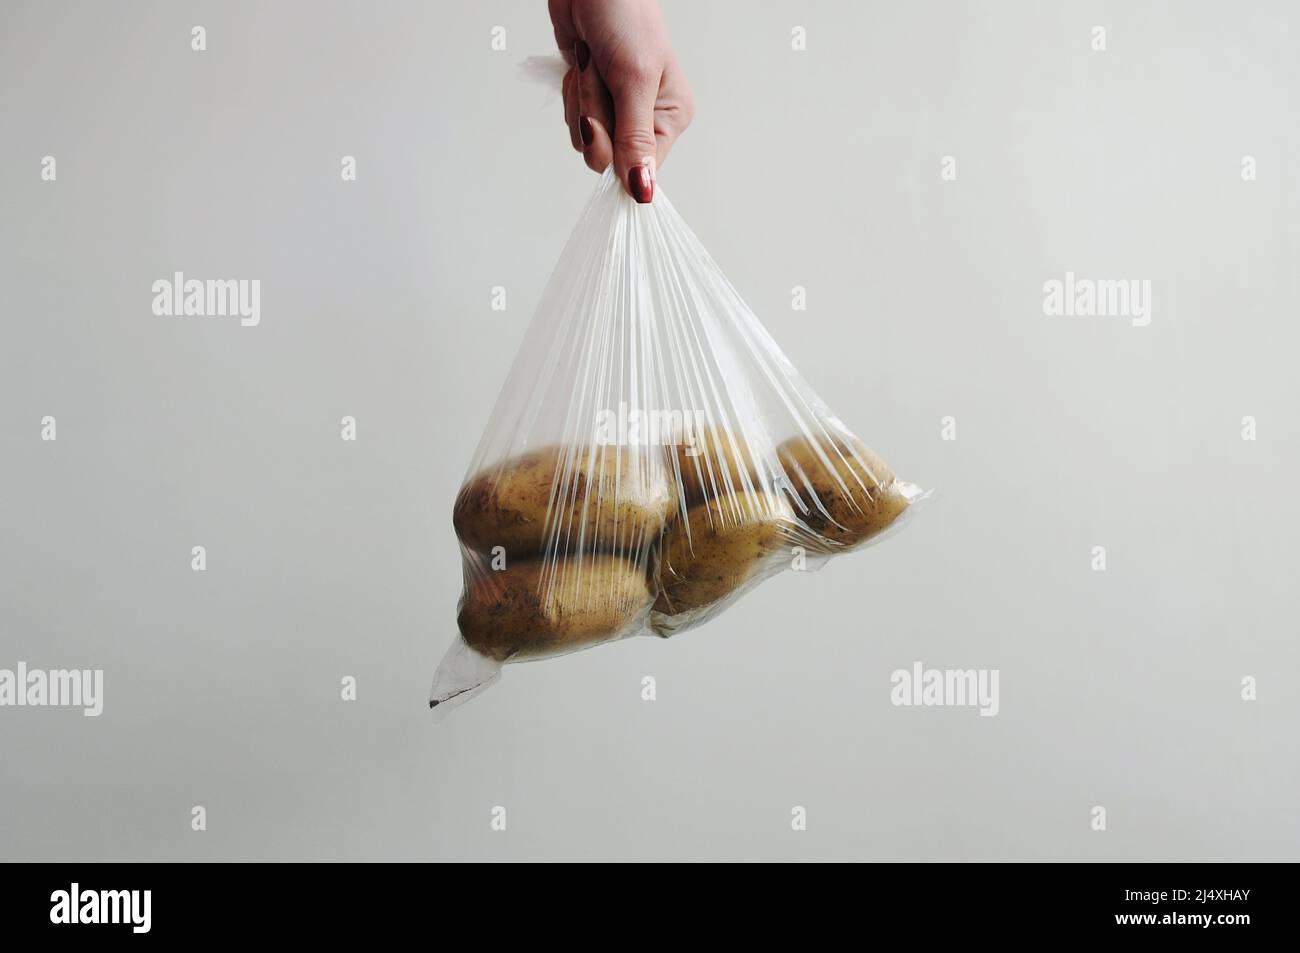 La main de la femme tient les pommes de terre dans un sac en plastique. Aliments emballés dans un emballage cellophane sur fond gris. Emballage non écologique Banque D'Images